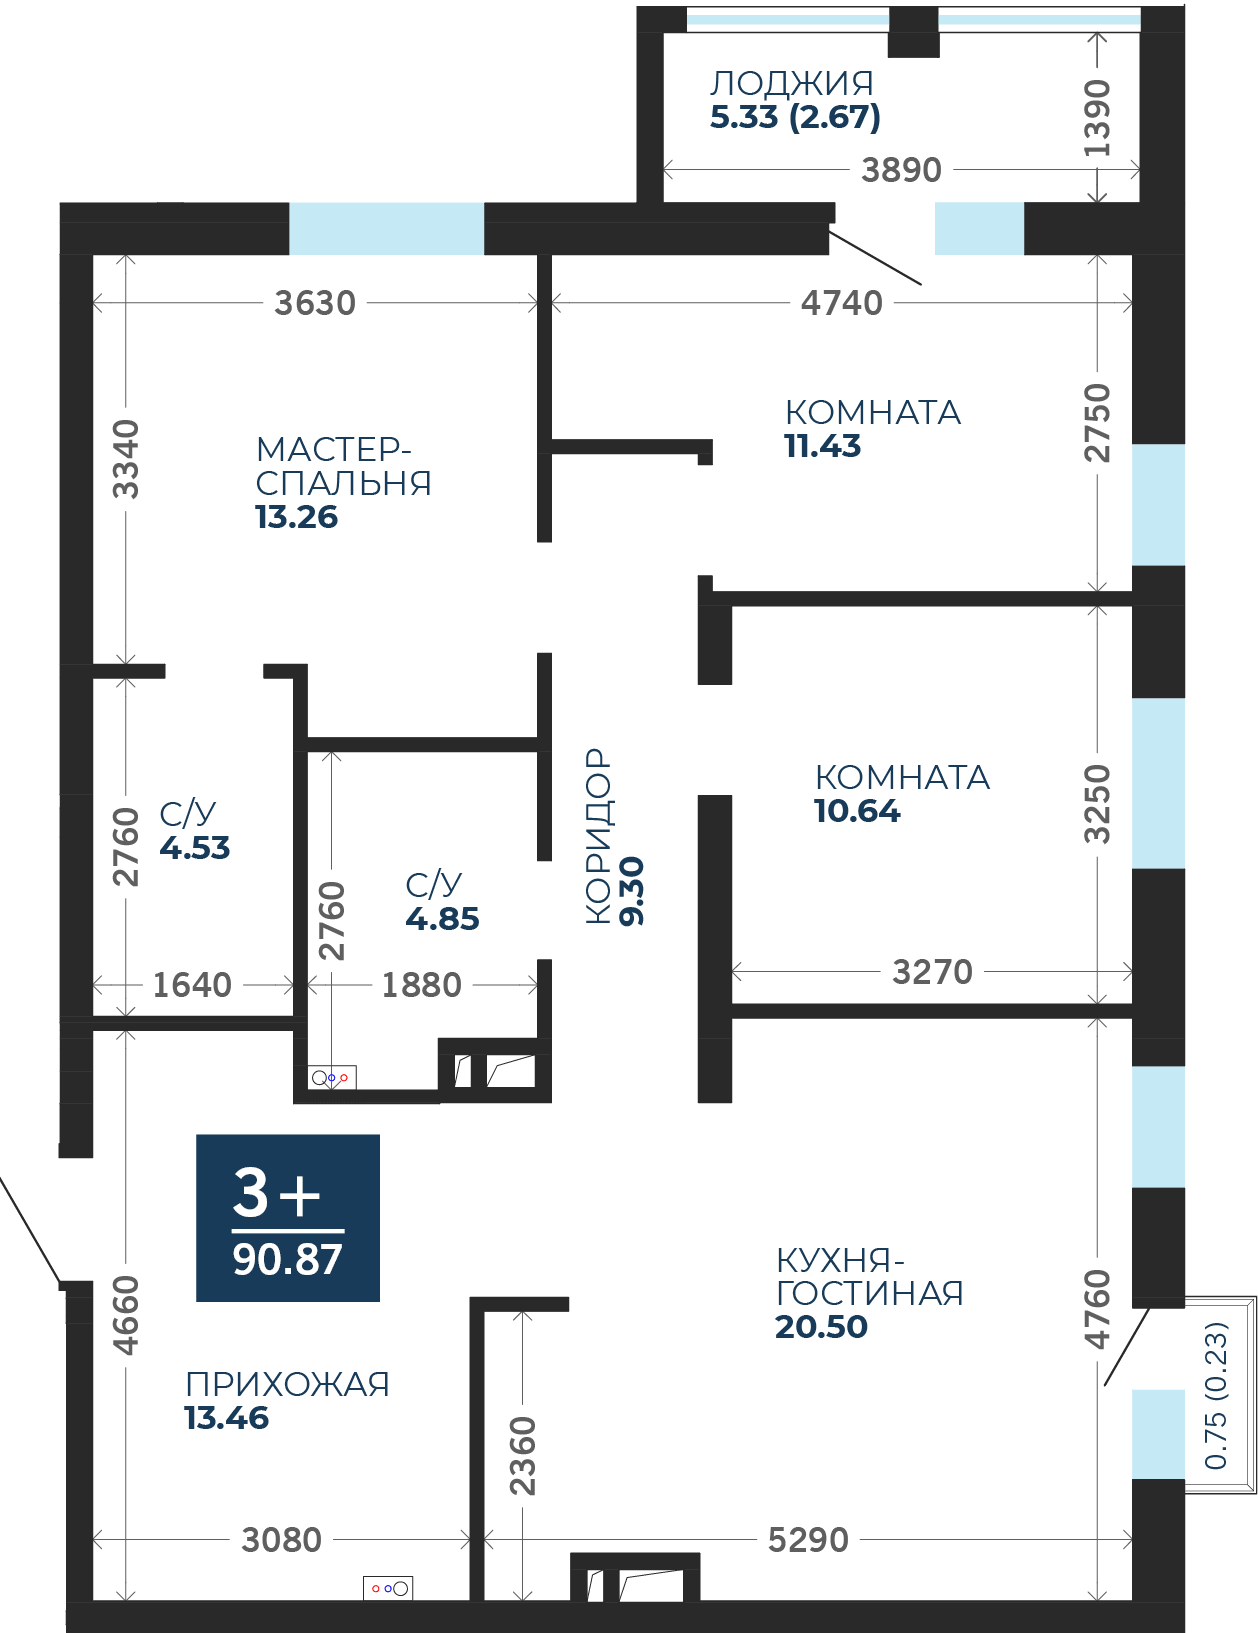 Квартира № 12, 3-комнатная, 90.87 кв. м, 3 этаж